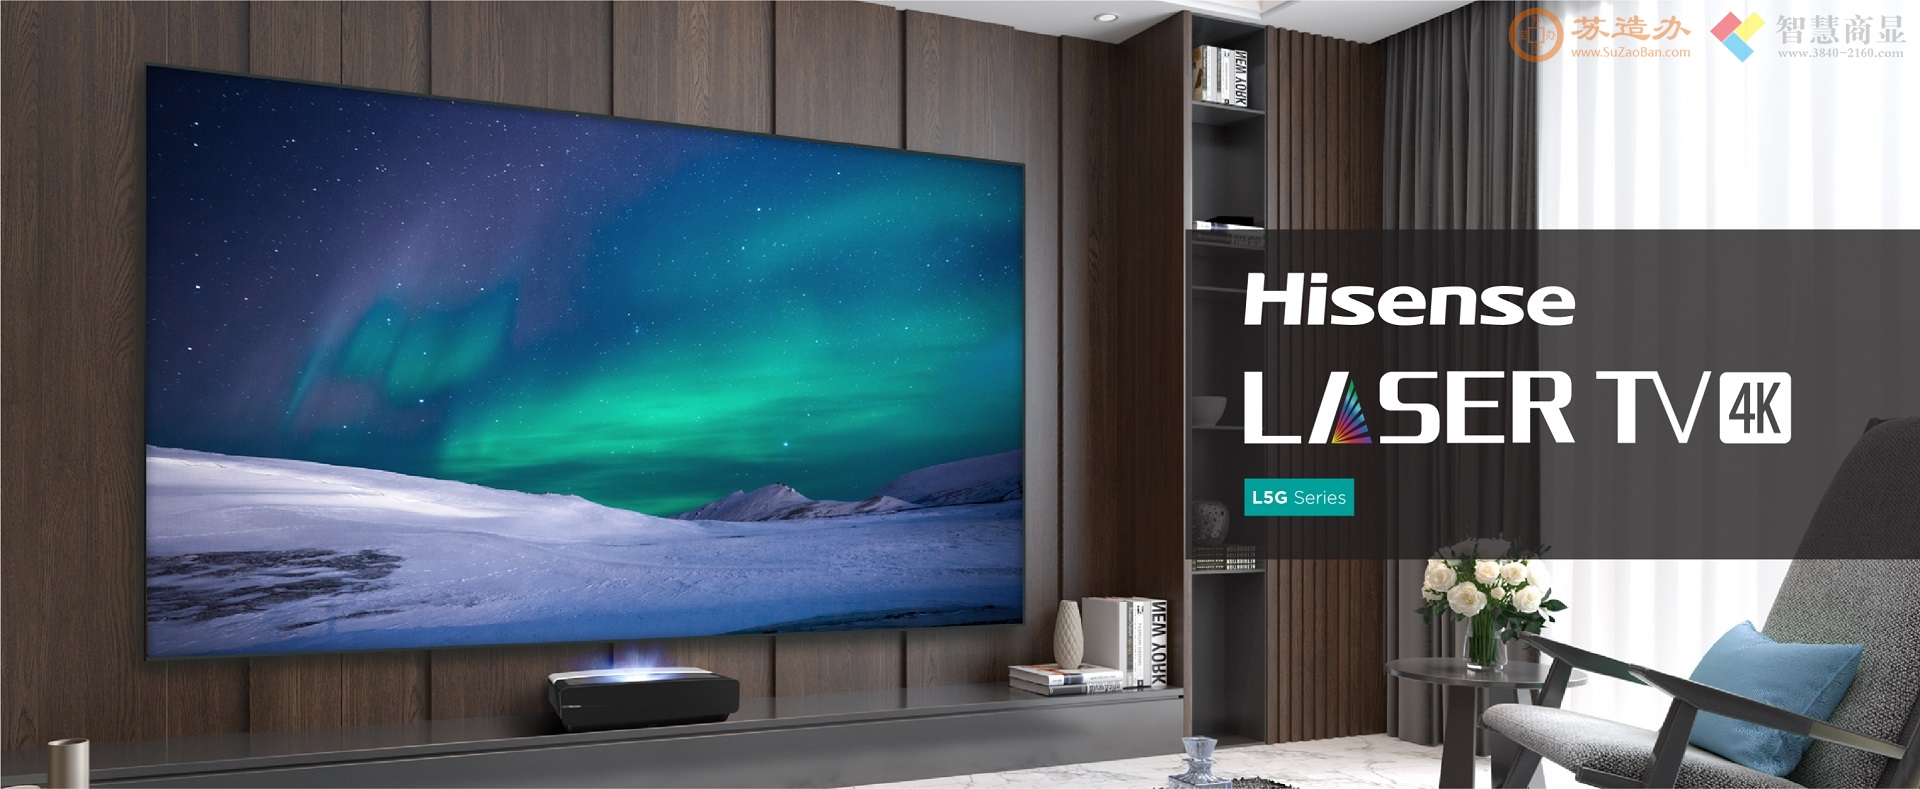 120L5G-CINE120A 120" 4K Smart Laser TV